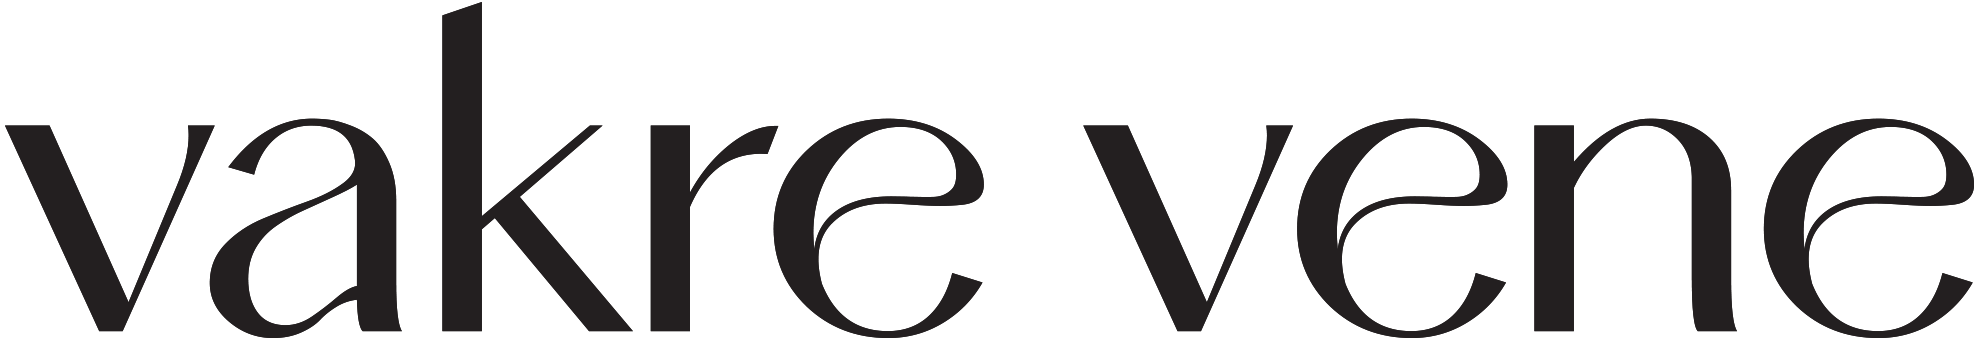 Vakre vene logo